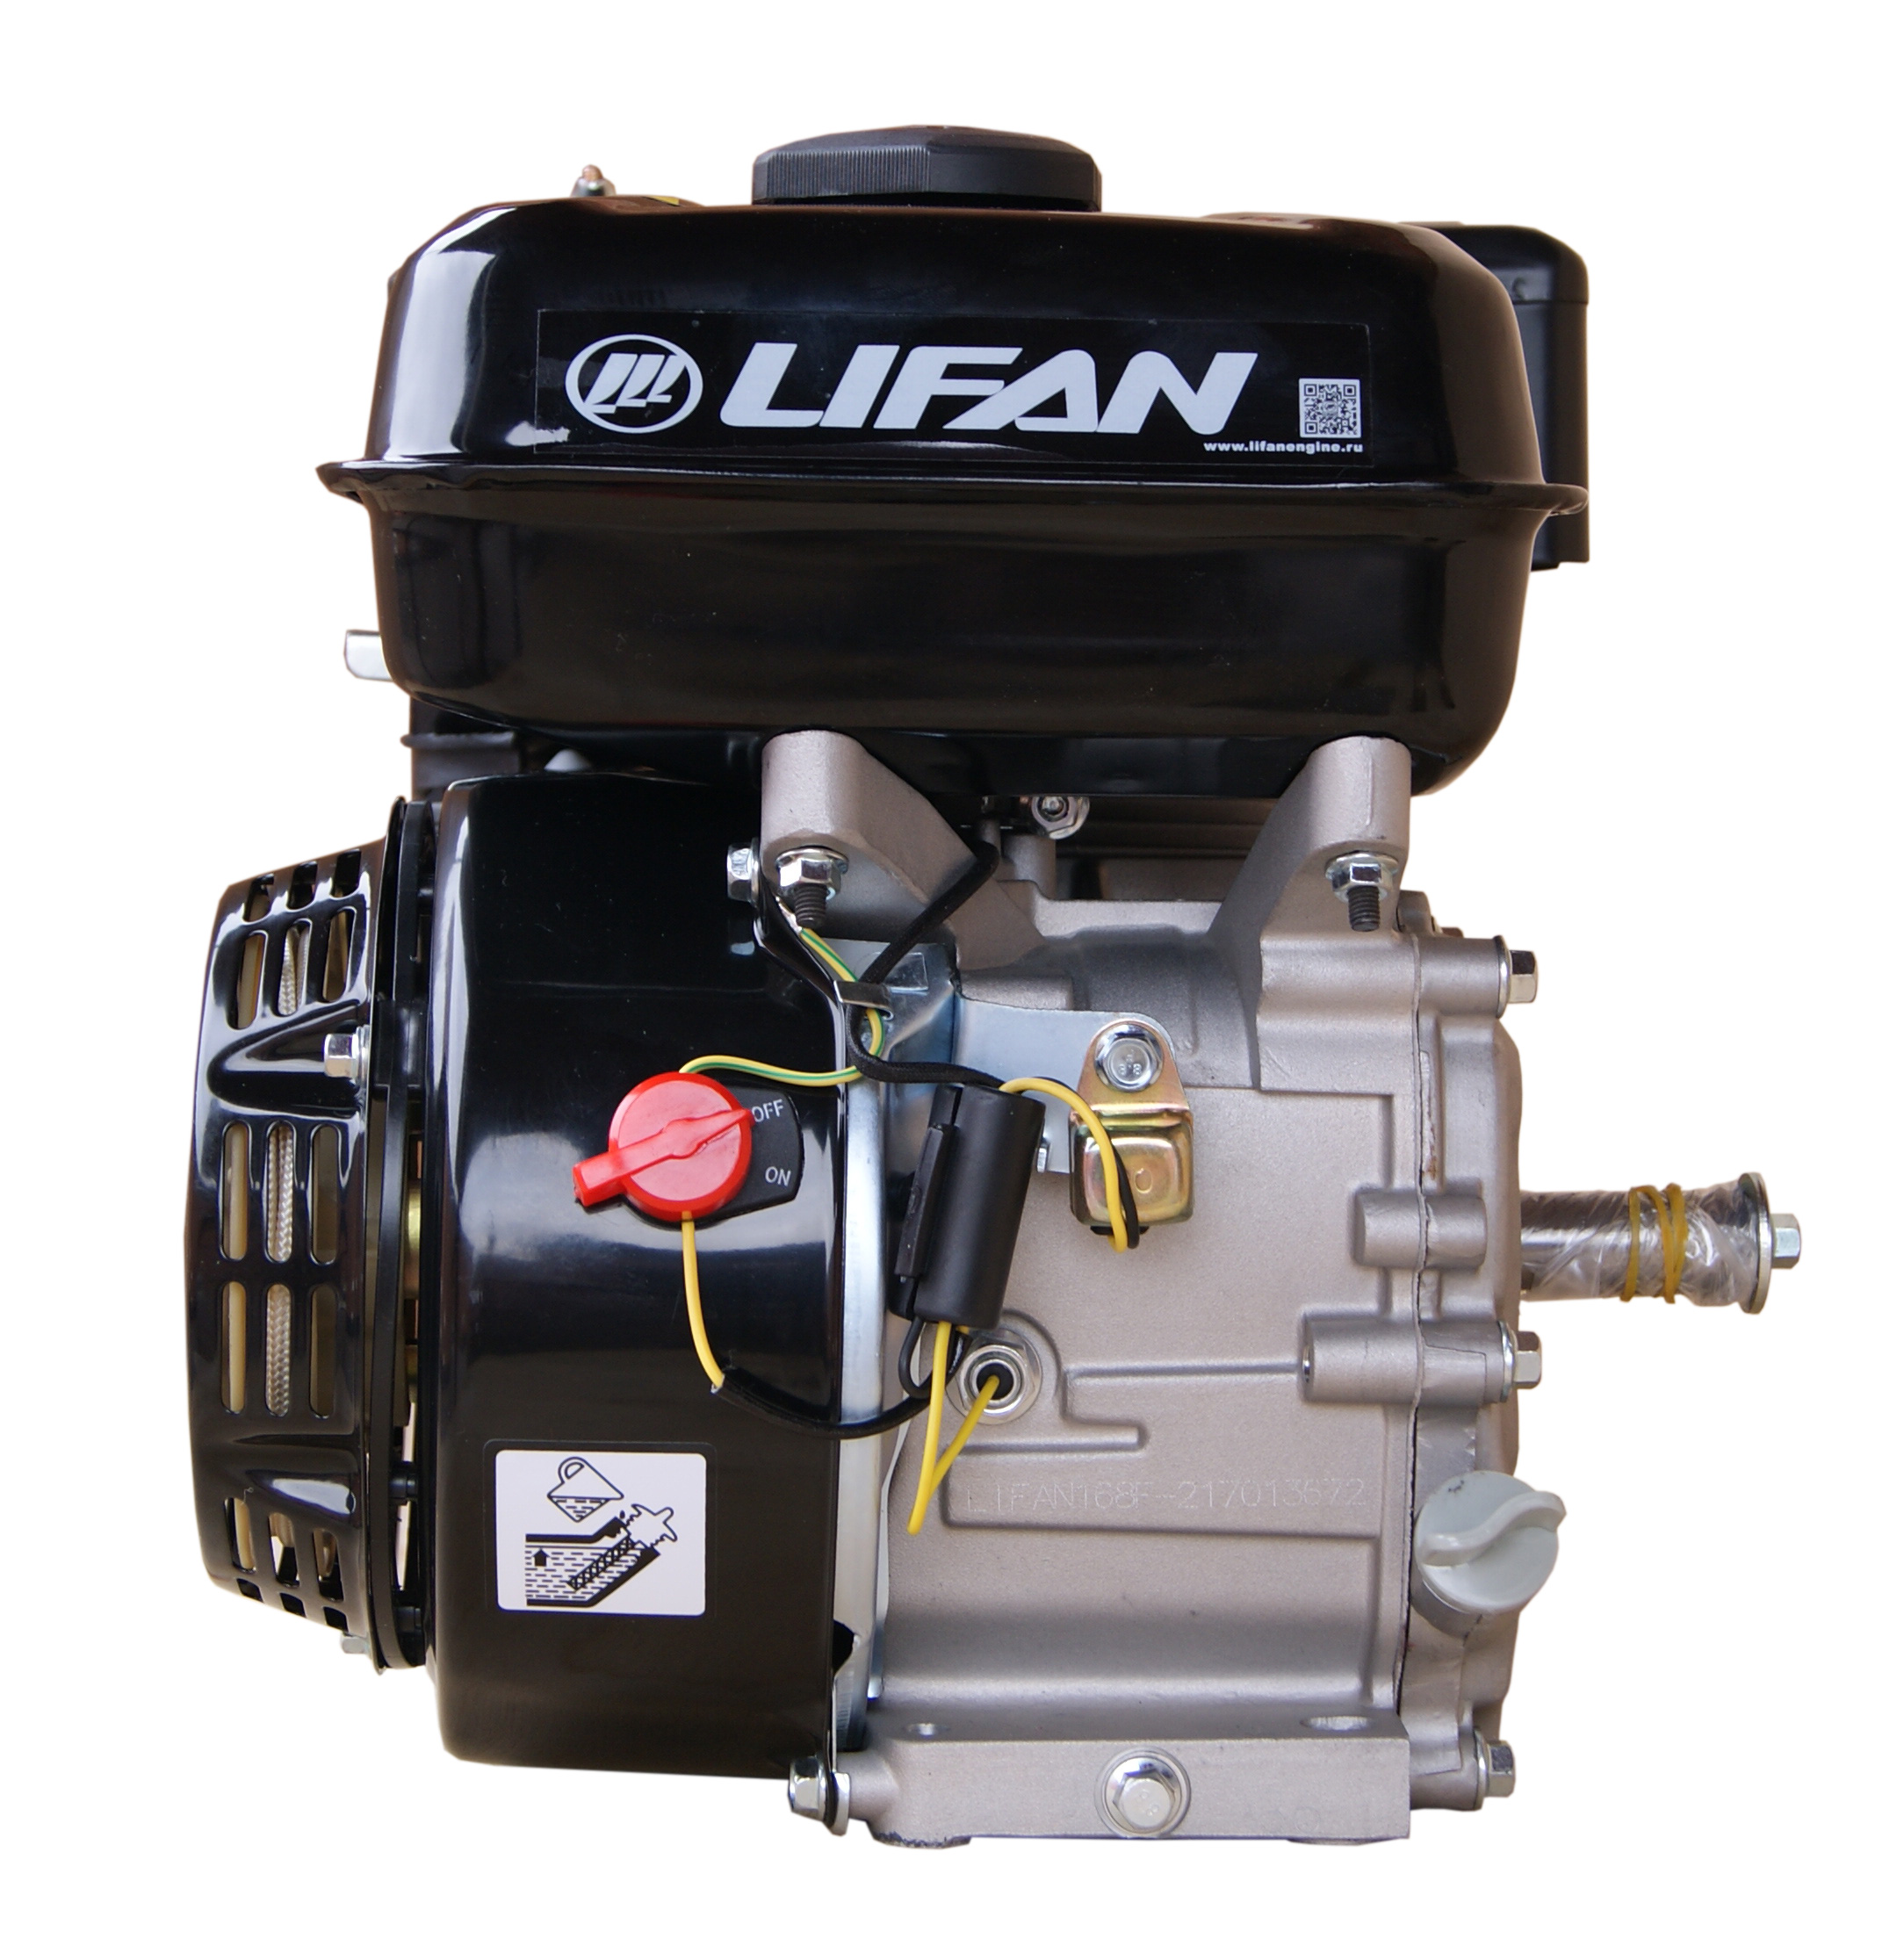 Двигатель LIFAN 168F-2М (6,5 л.с, d вала 20мм)